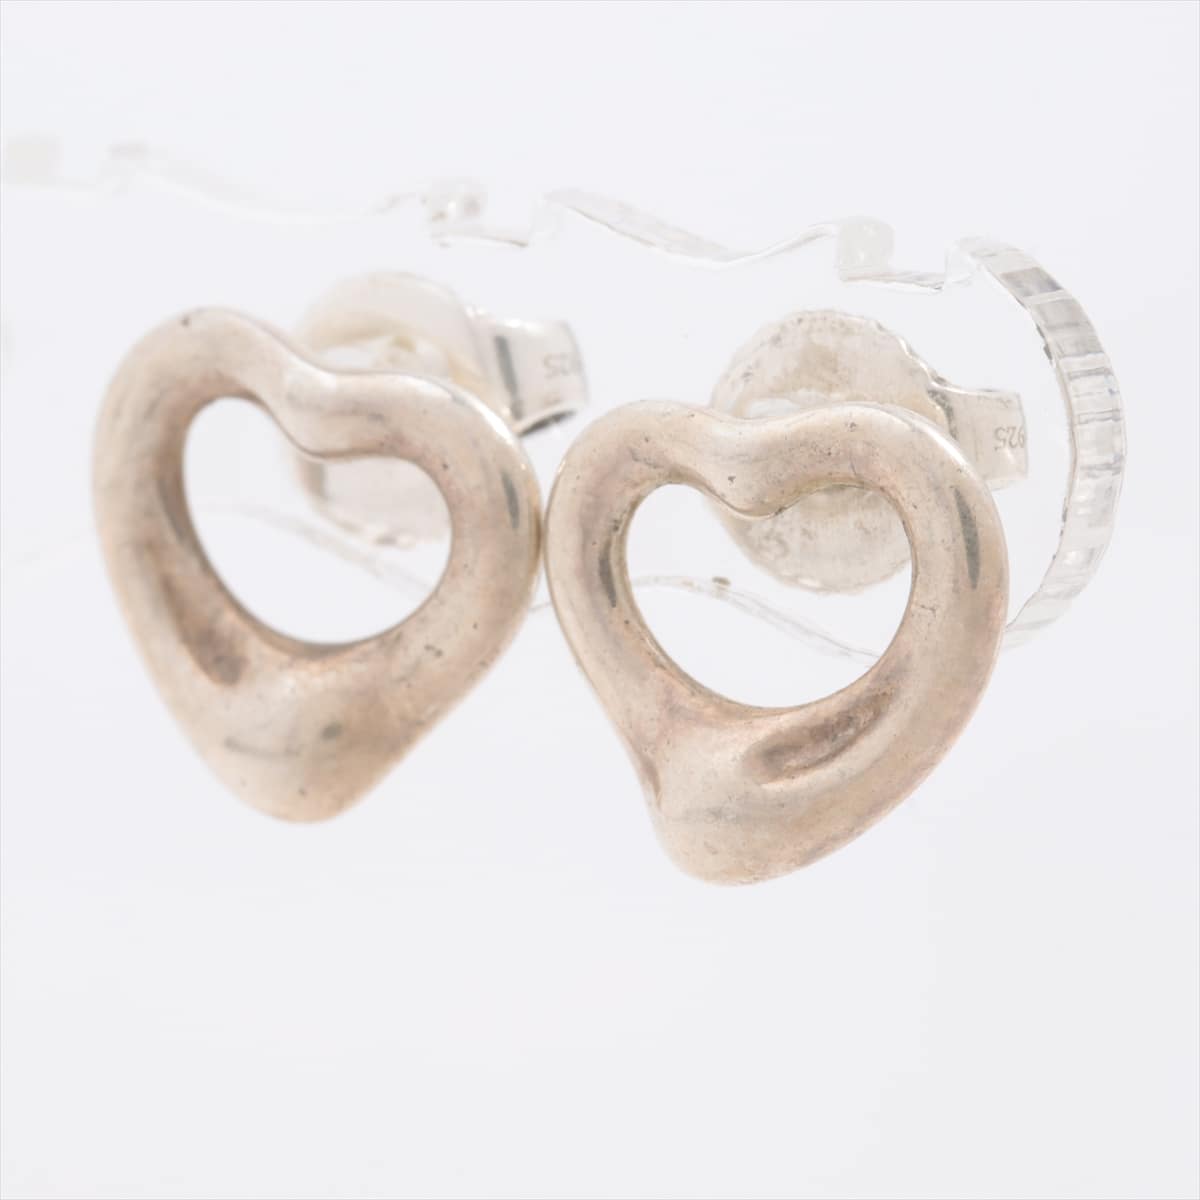 Tiffany Open Heart Piercing jewelry (for both ears) 925 2.0g Silver